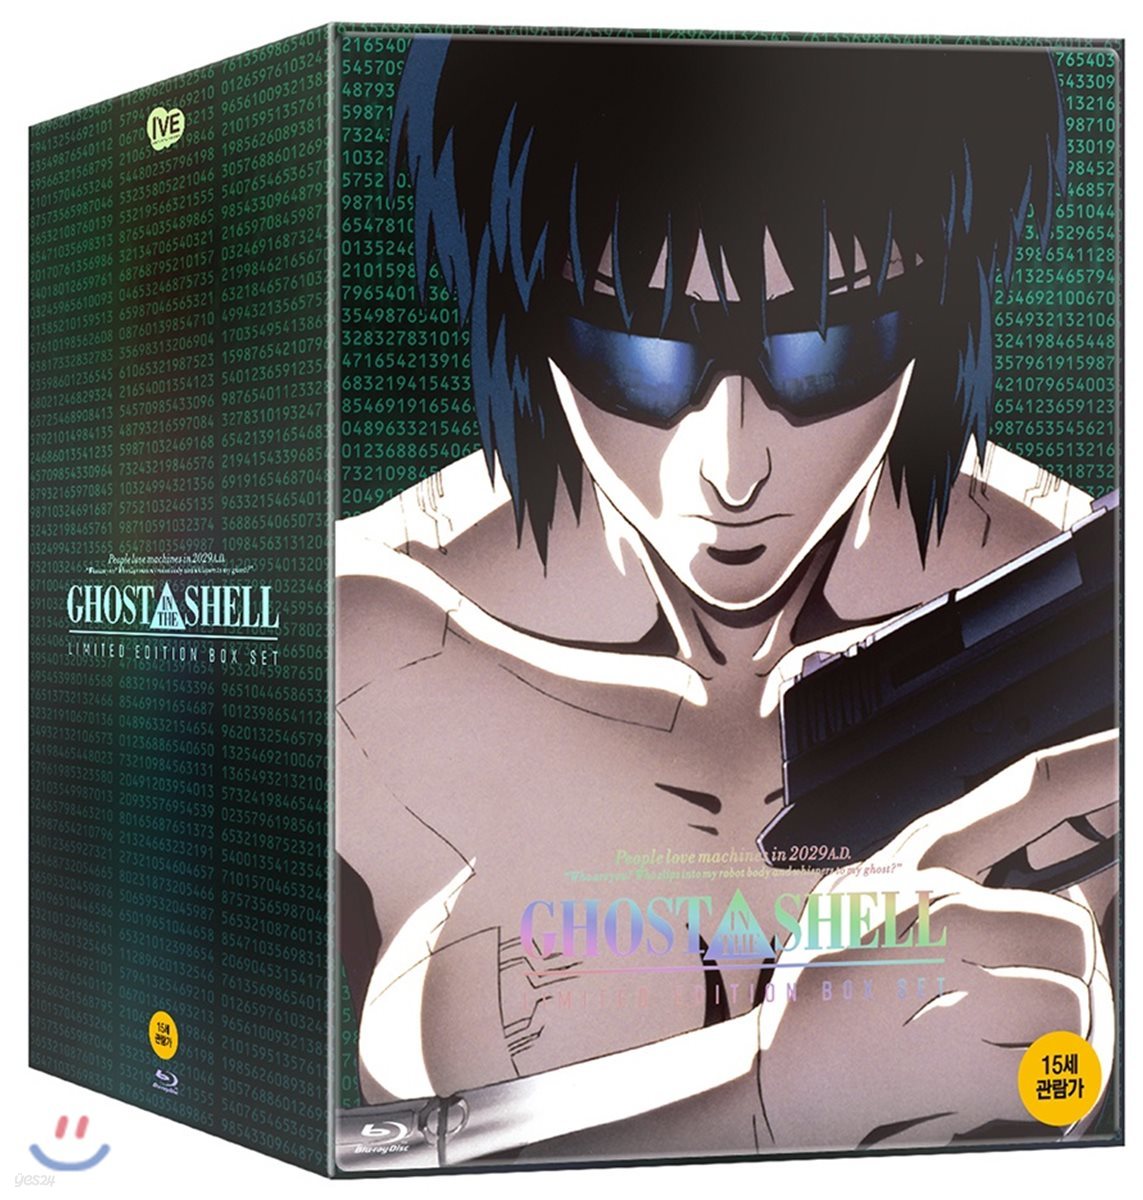 공각기동대 (3Disc 리미티드 에디션 박스세트 프리미엄 넘버링 Premium Fullslip Limited Edition Box Set) : 블루레이